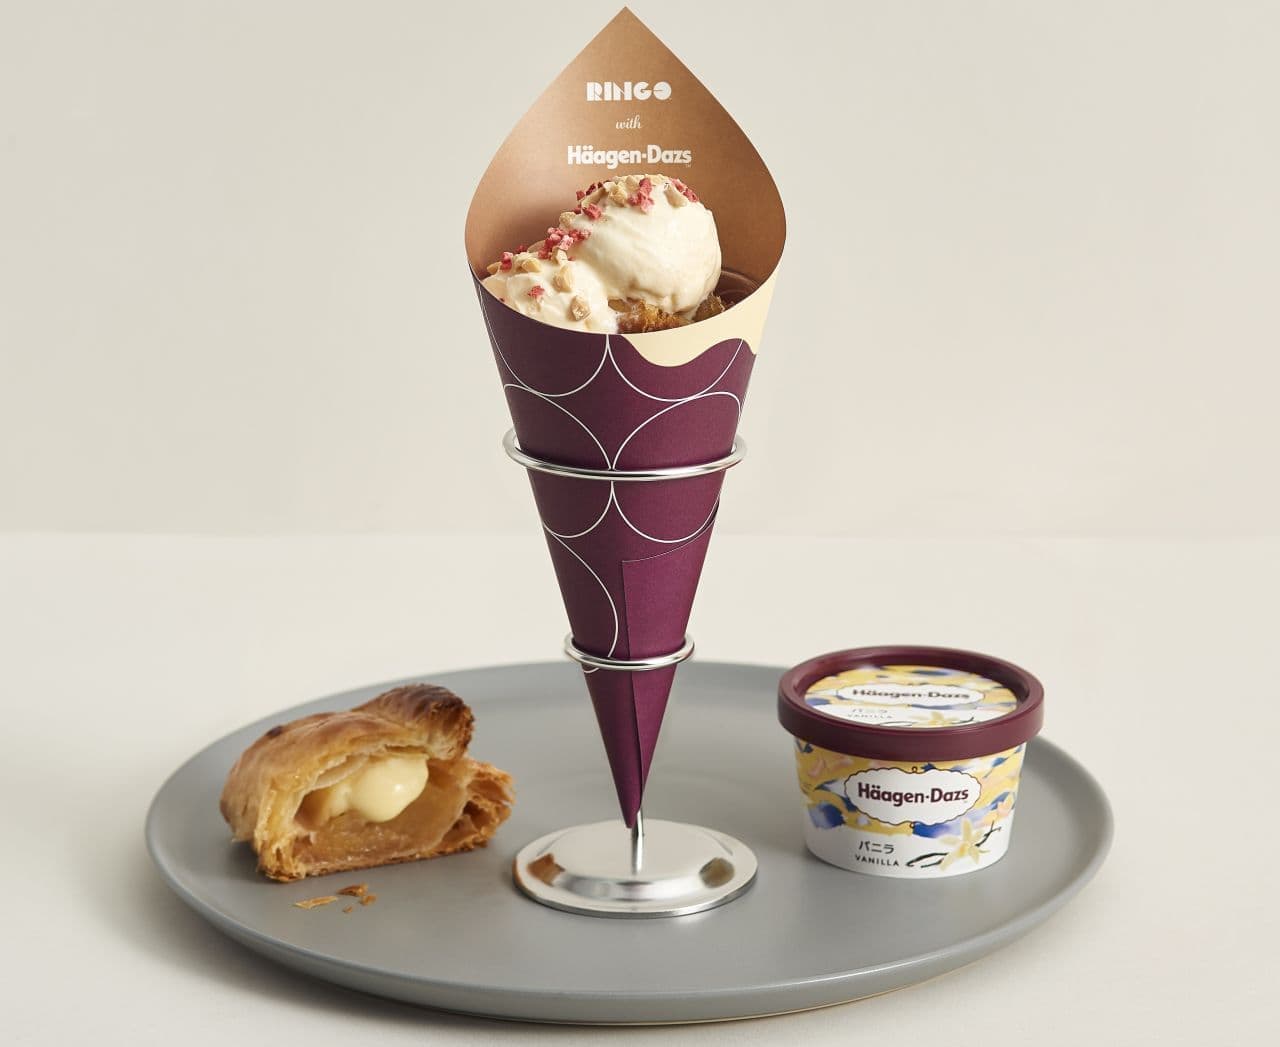 RINGO with Haagen-Dazs (Custard Apple Pie Vanilla Ice Cream Sundae)